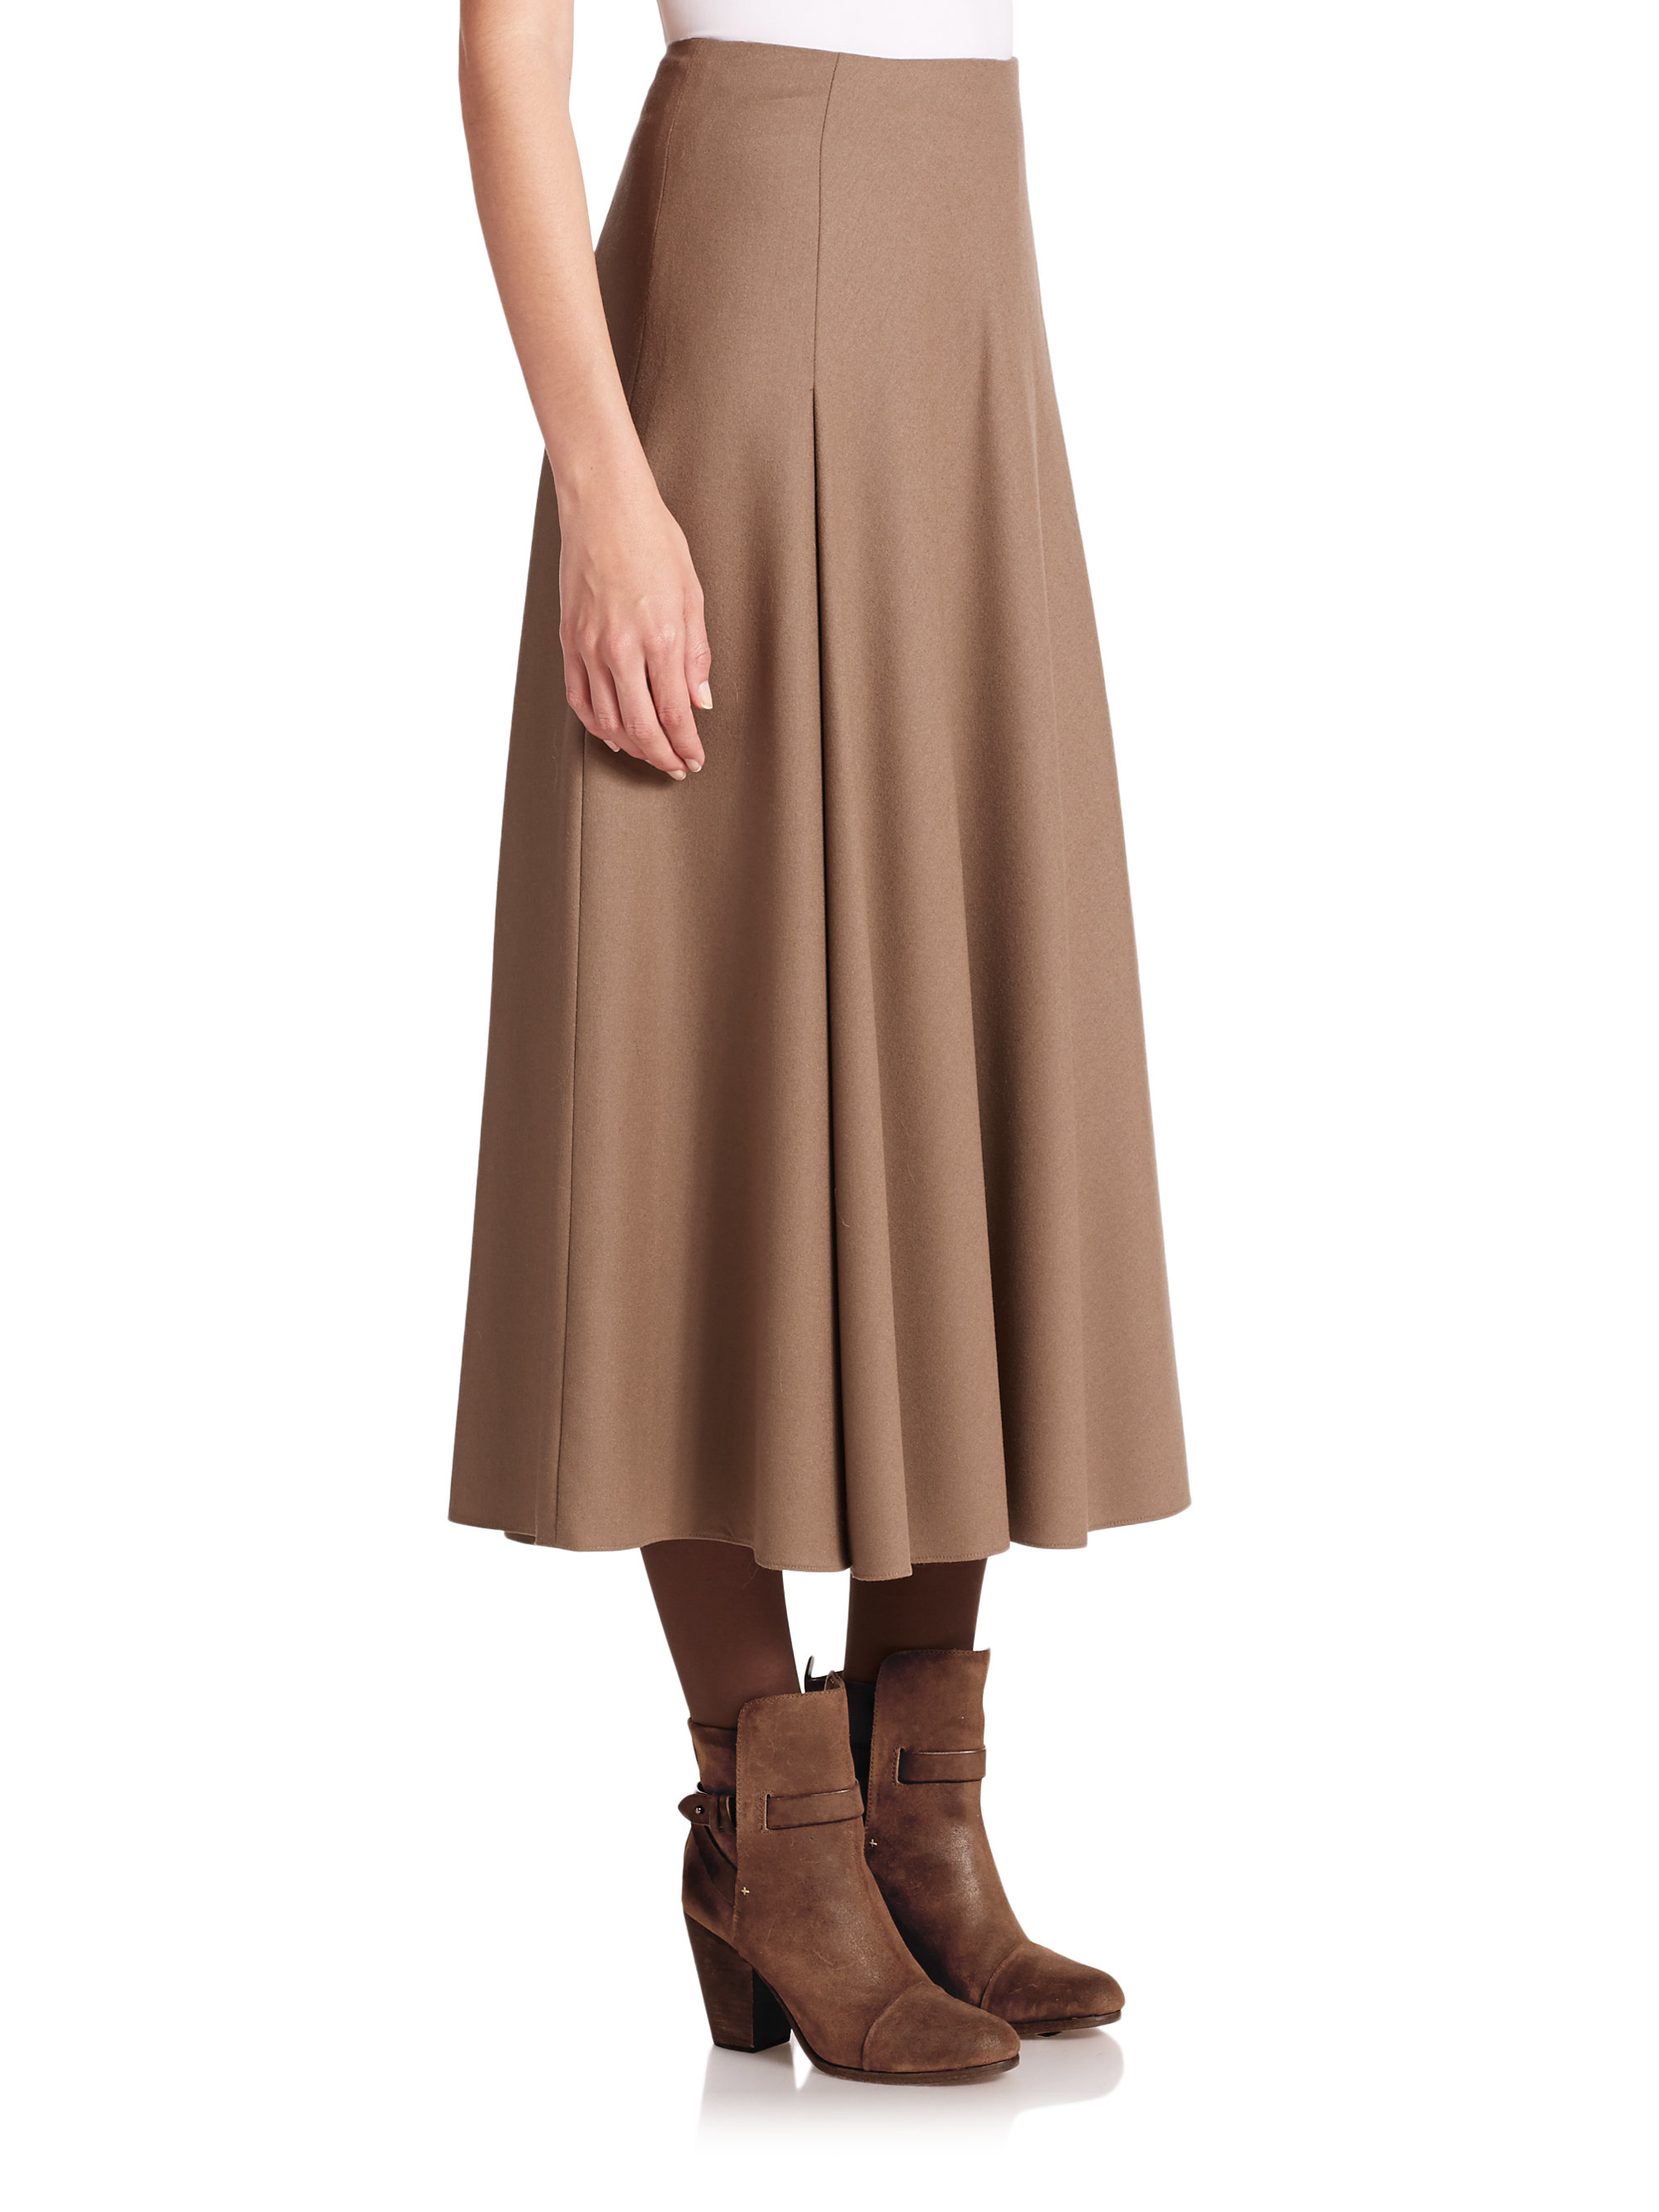 Lyst - Ralph Lauren Merino Wool Skirt in Brown